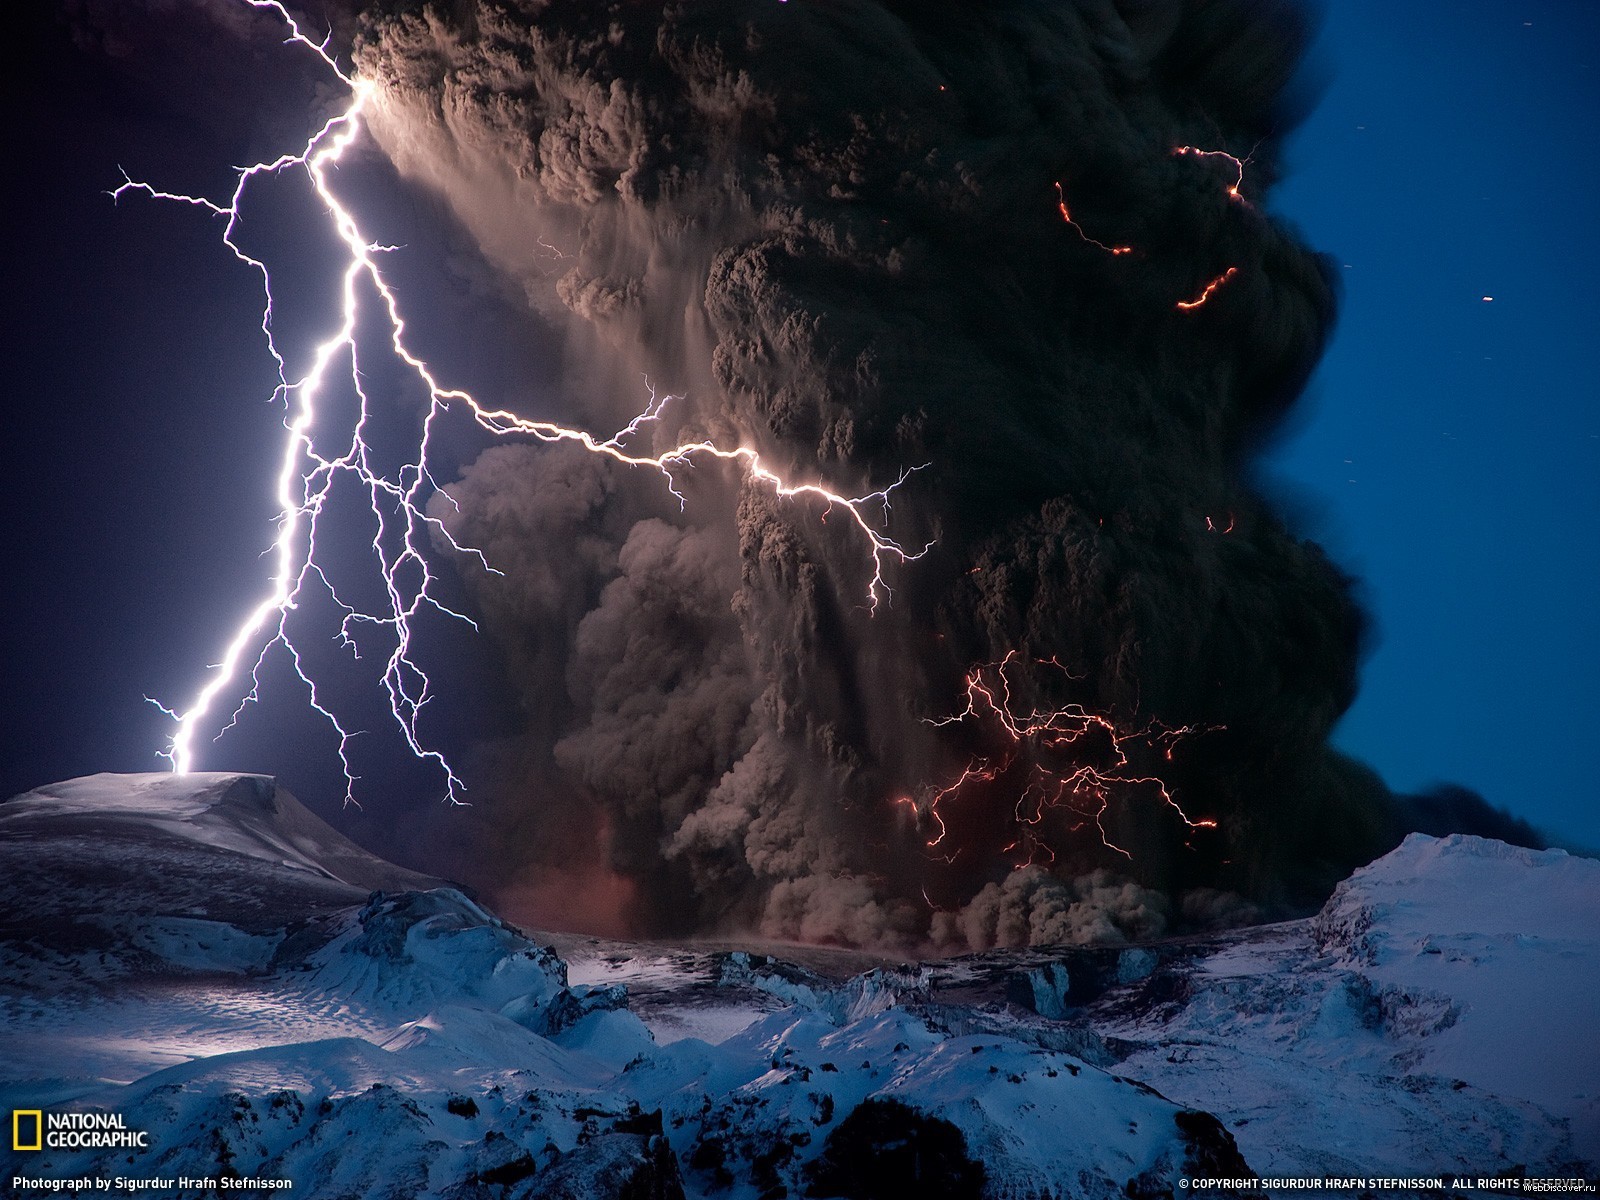 General 1600x1200 National Geographic ash lightning volcano nature eruptions nordic landscapes Iceland landscape volcanic eruption